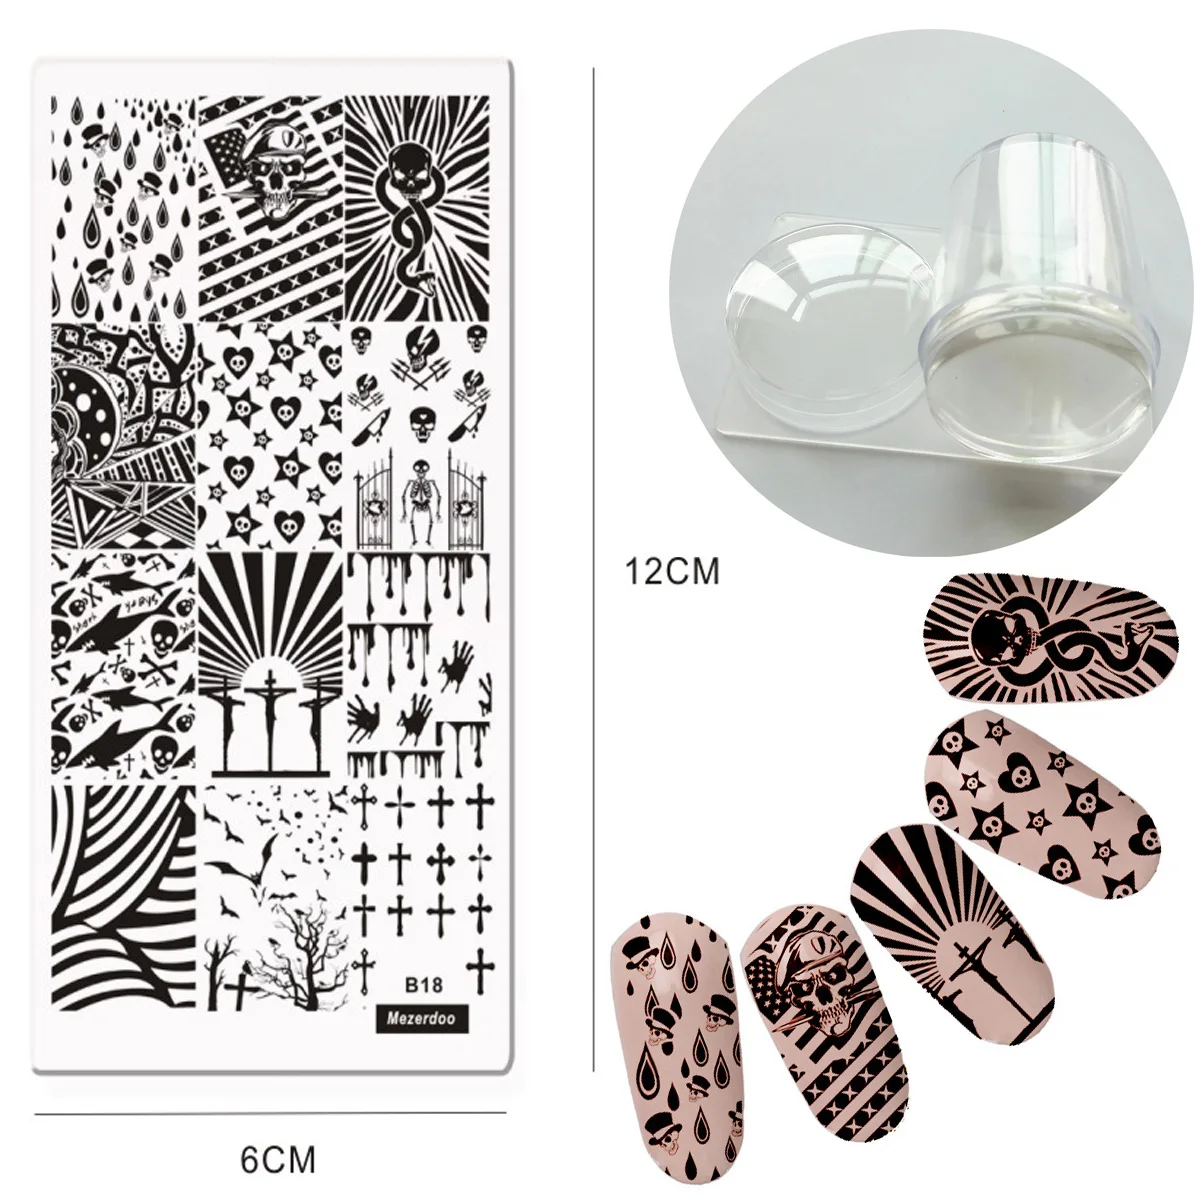 Лак для принта ногтей набор симпатичная панда собака стальная штамповка для ногтей пластины+ большой прозрачный желе штамп-инструмент для дизайна ногтей СКРЕБОК НАБОР - Цвет: Синий